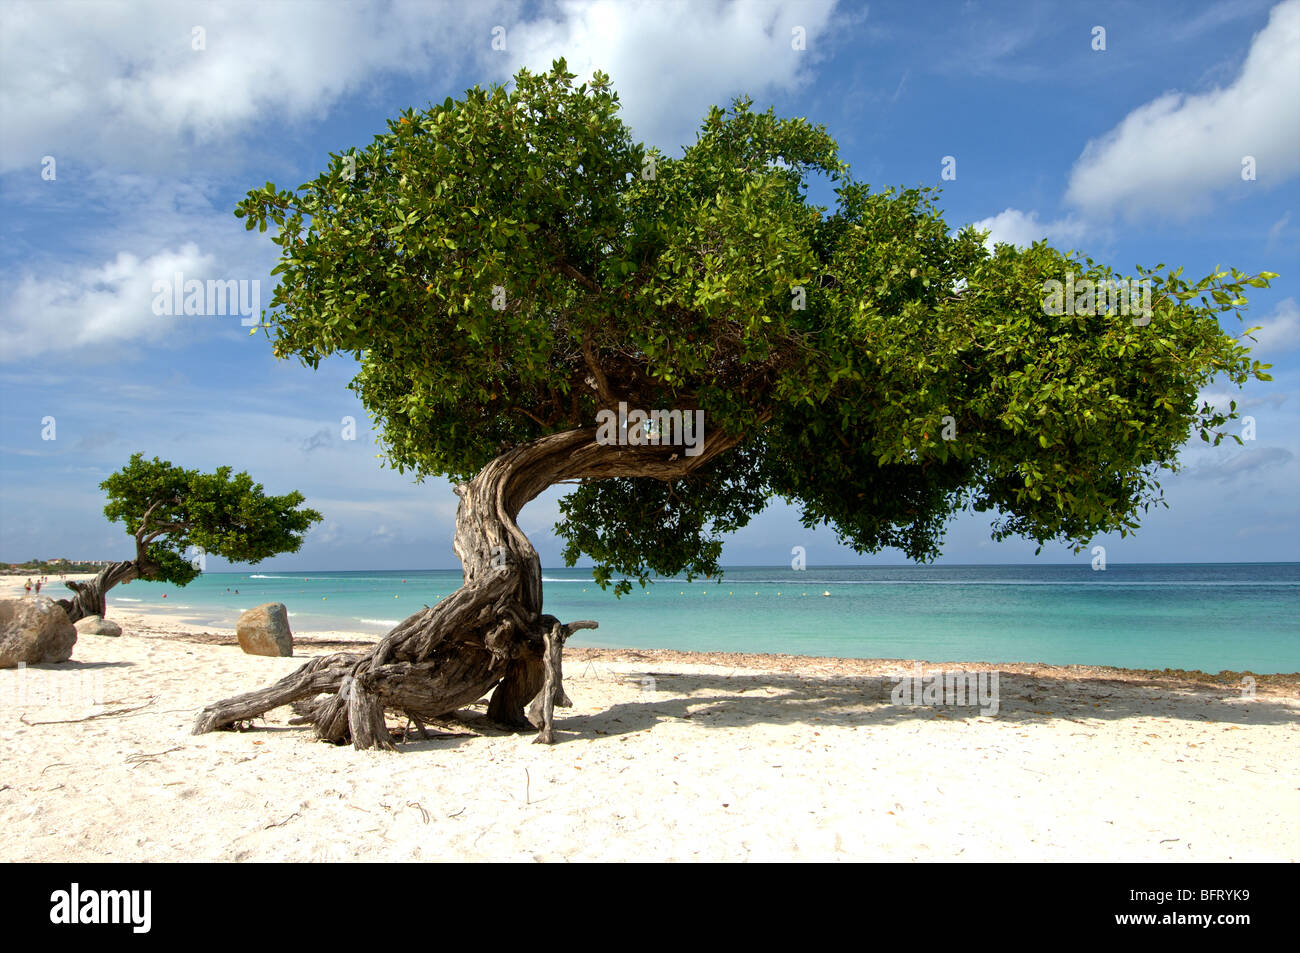 Aruba divi divi tree su eagle beach Foto Stock